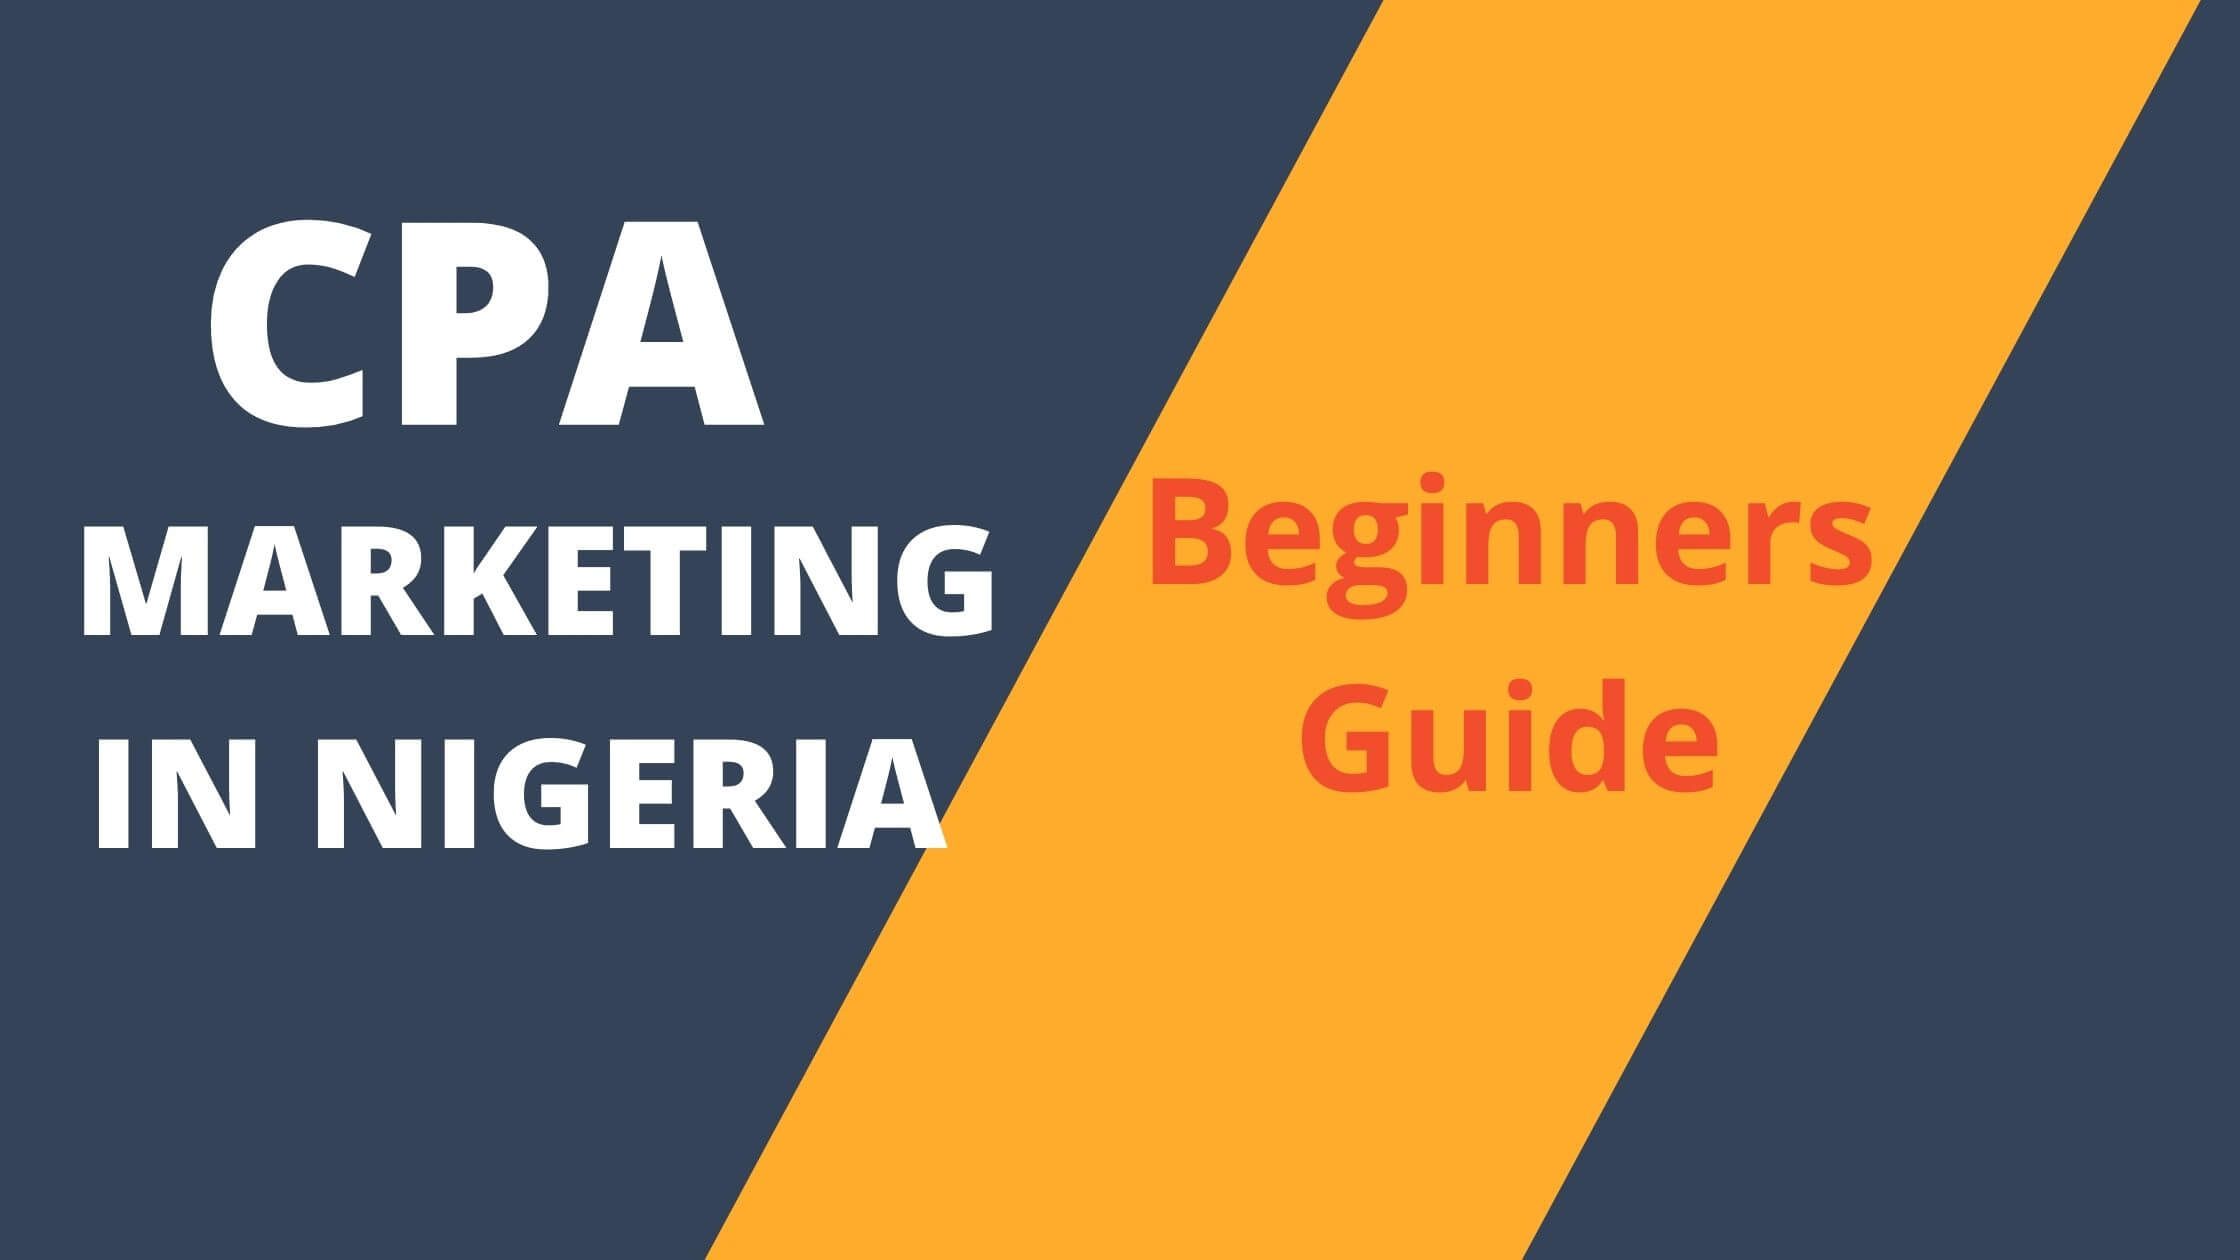 CPA marketing in Nigeria